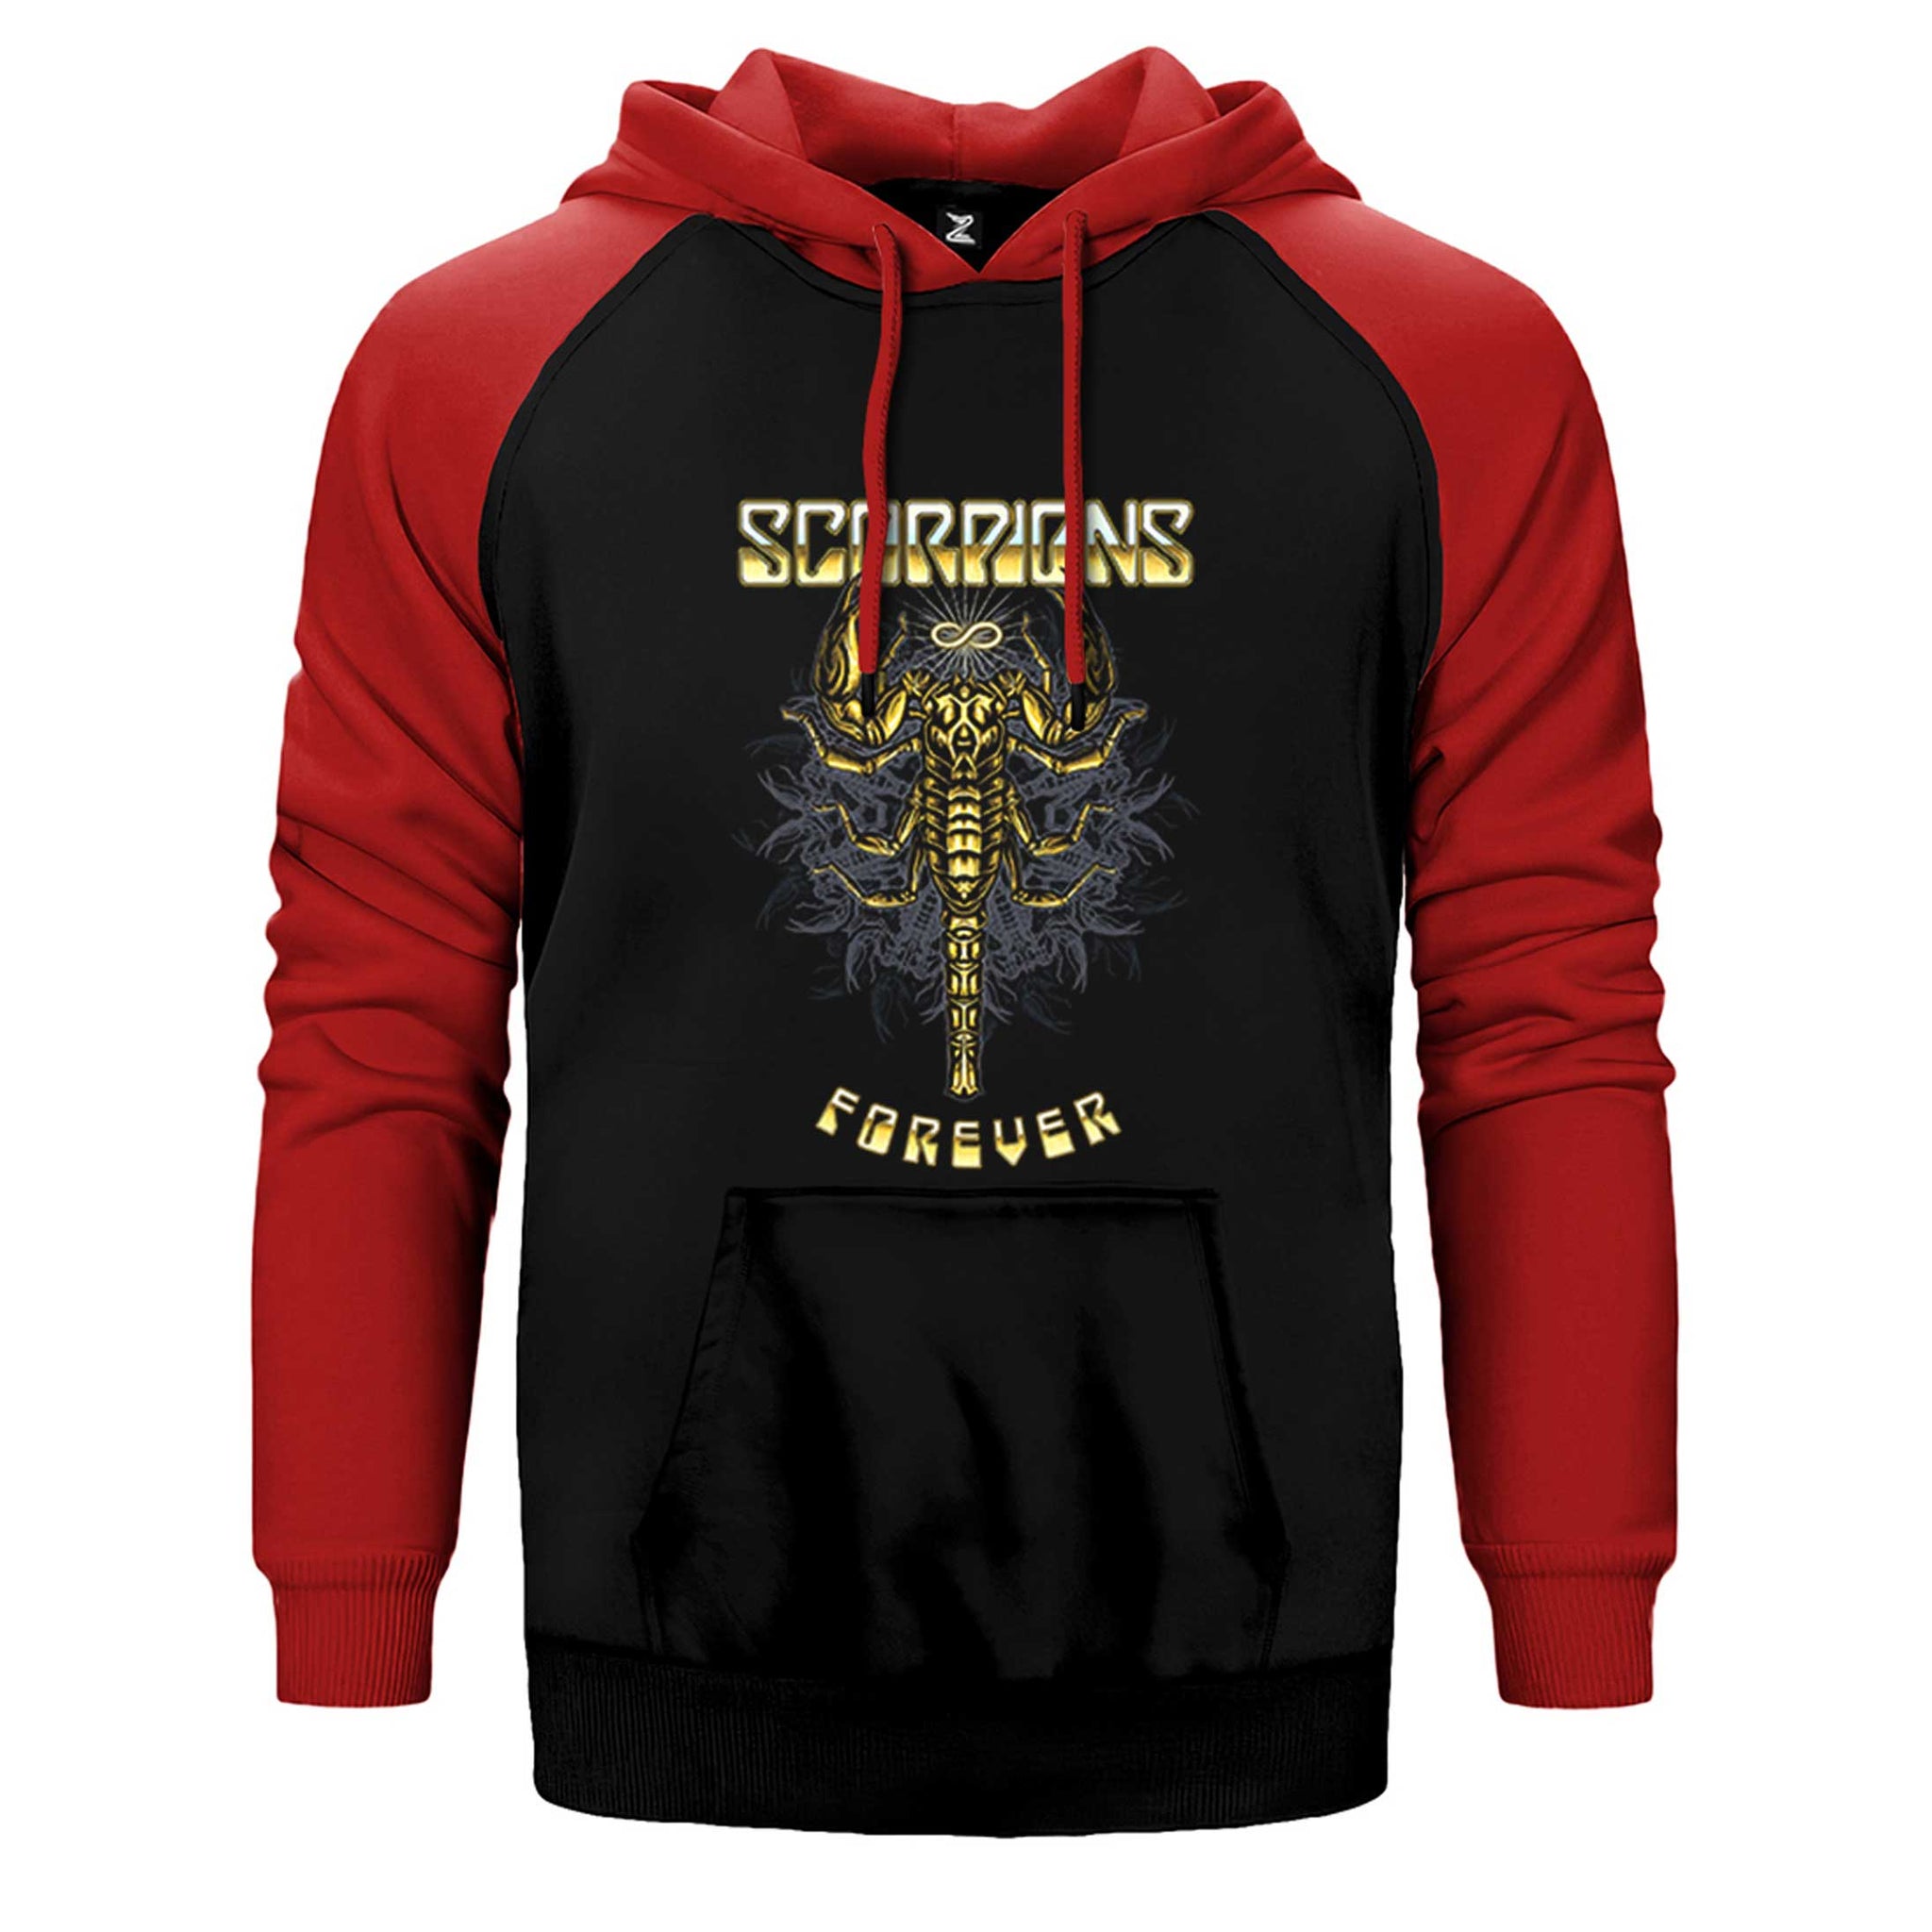 Scorpions Forever Çift Renk Reglan Kol Sweatshirt / Hoodie